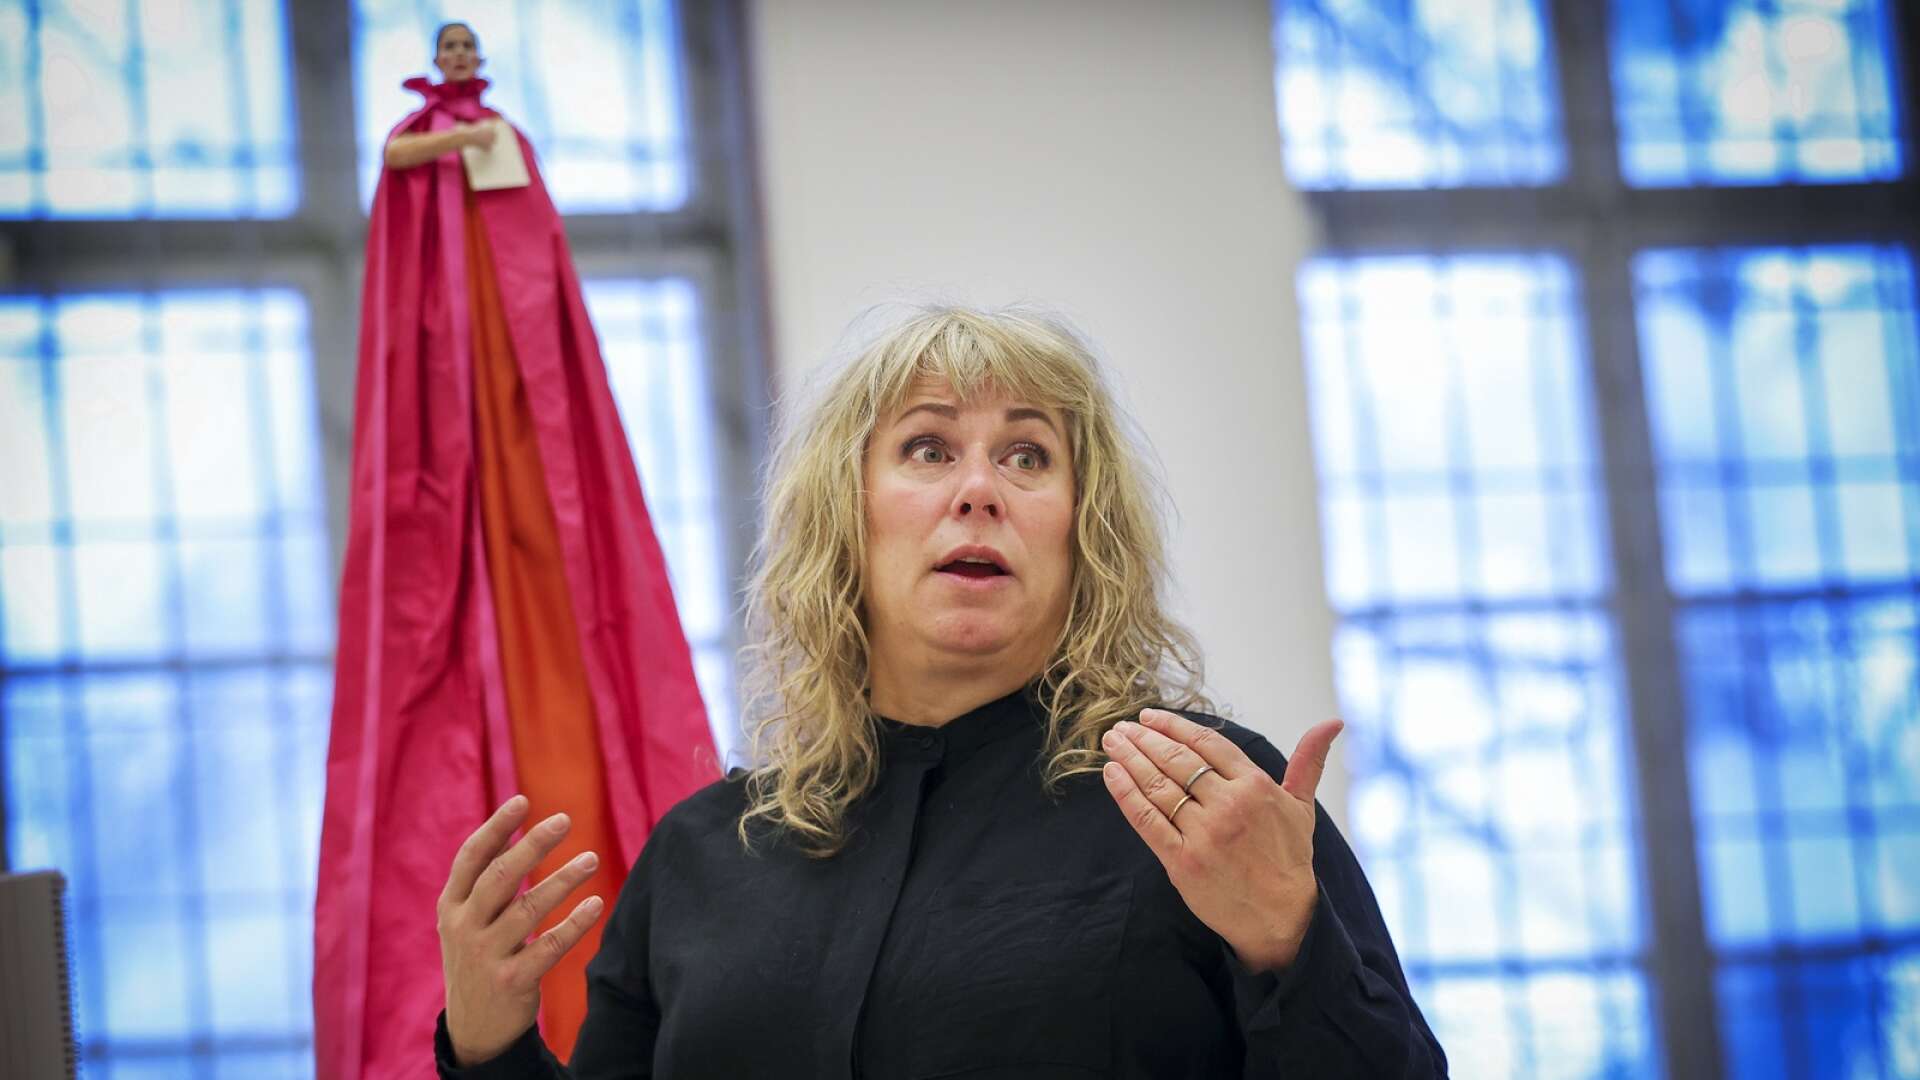 Starka intryck möts när Stina Wollter ställer ut på Kristinehamns konstmuseum